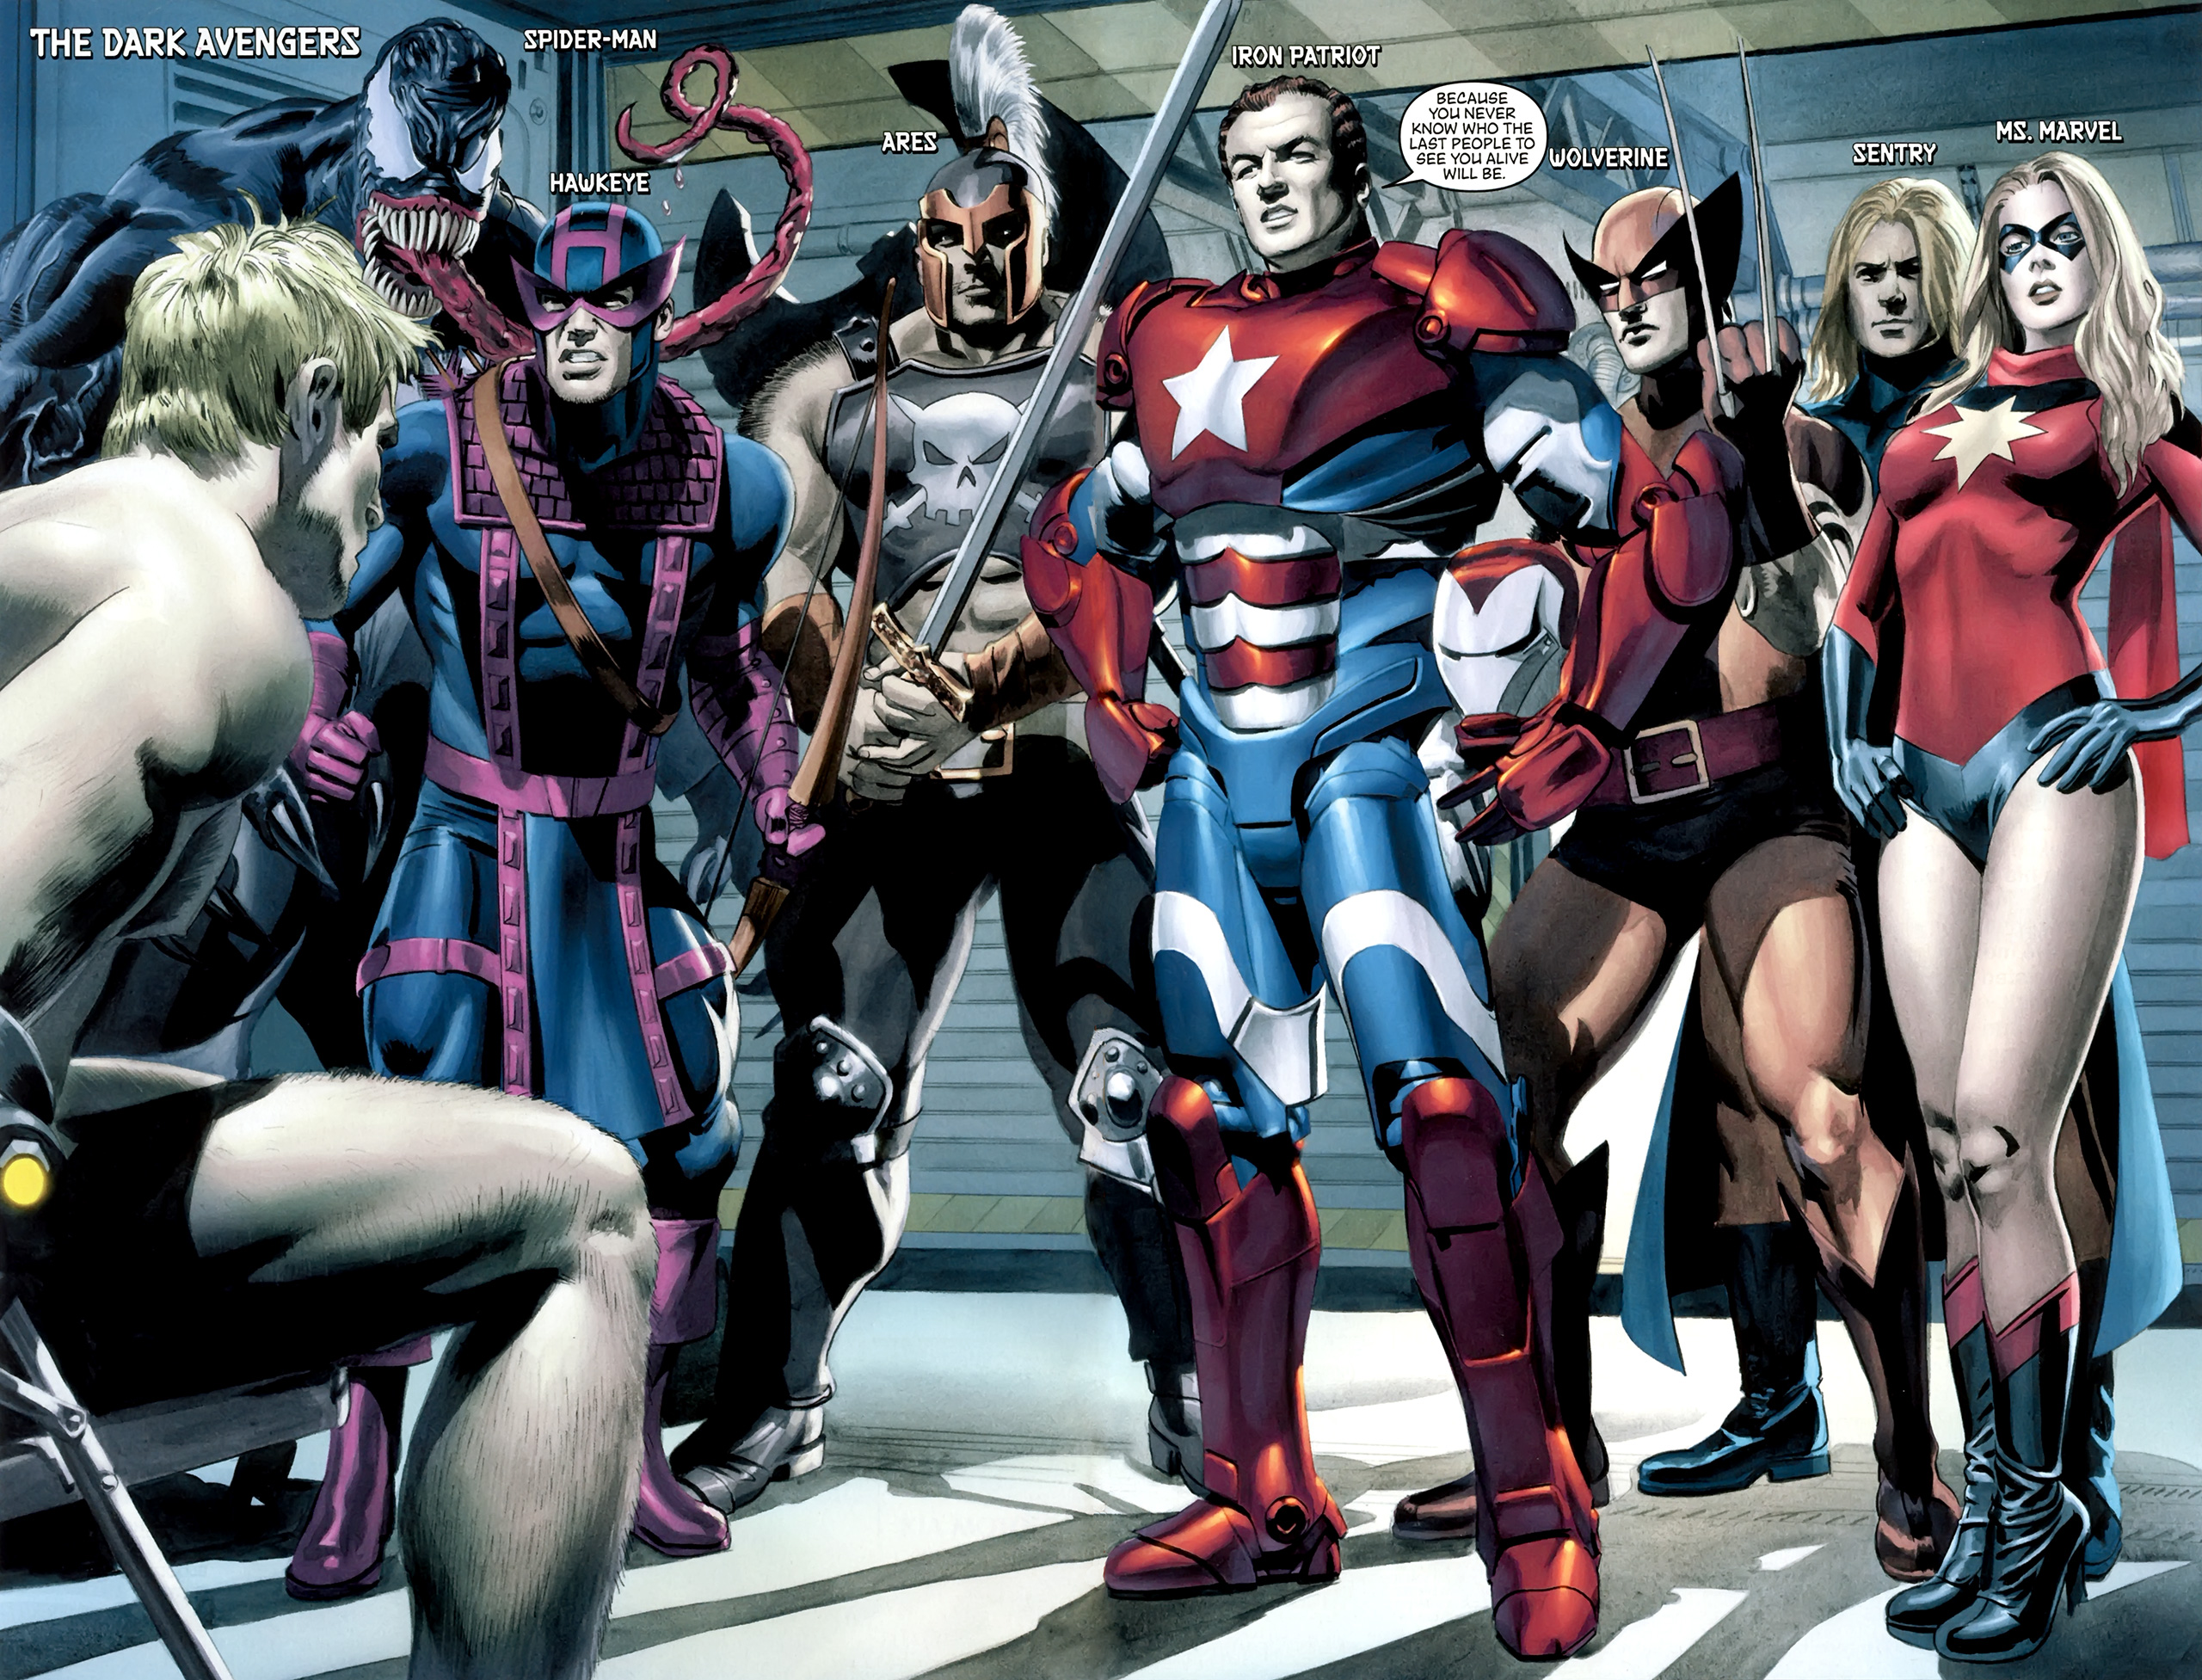 Dark Avengers #17